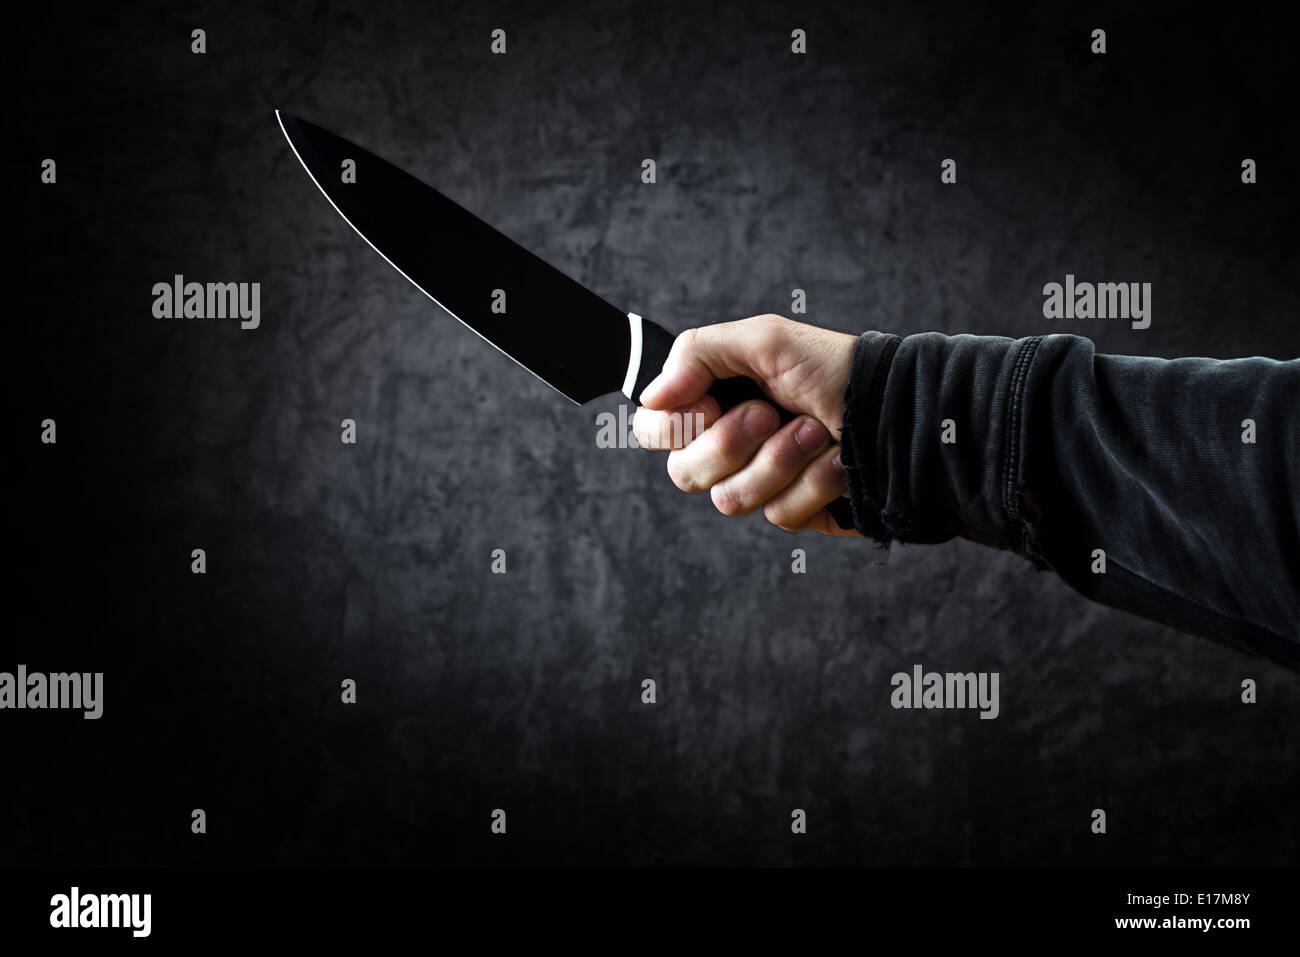 Böser Mensch mit glänzenden Messer - ein killer Person mit scharfen Messer, ein Mord, Mord Landschaft zu begehen. Stockfoto